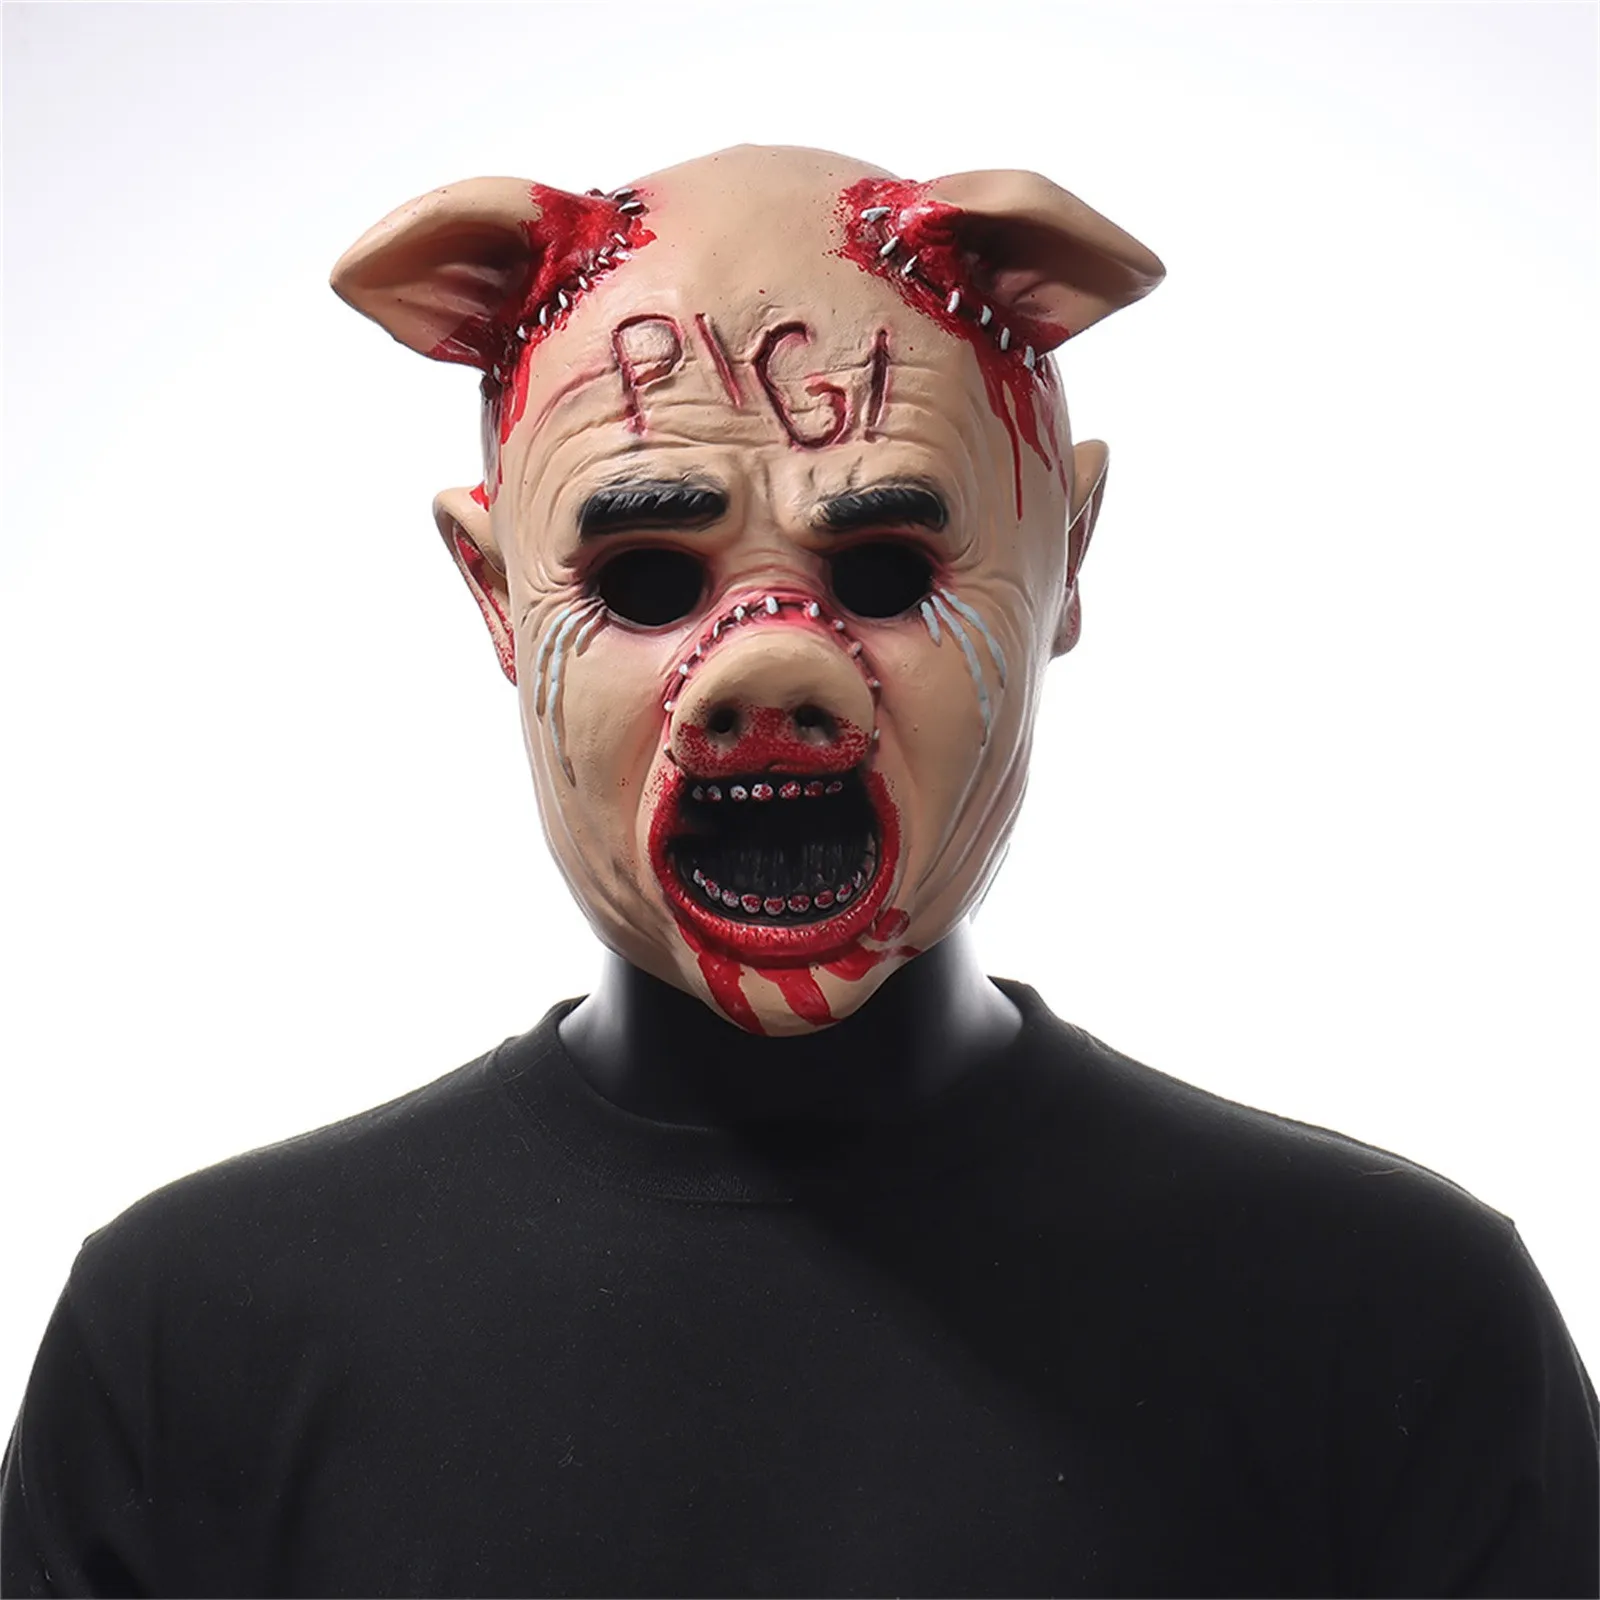 

Страшные маски на голову свиньи, косплей, животные, свинья, страшные латексные маски, шлем, Хэллоуин, карнавал, вечеринка, костюм, реквизит, mascaras, Хэллоуин